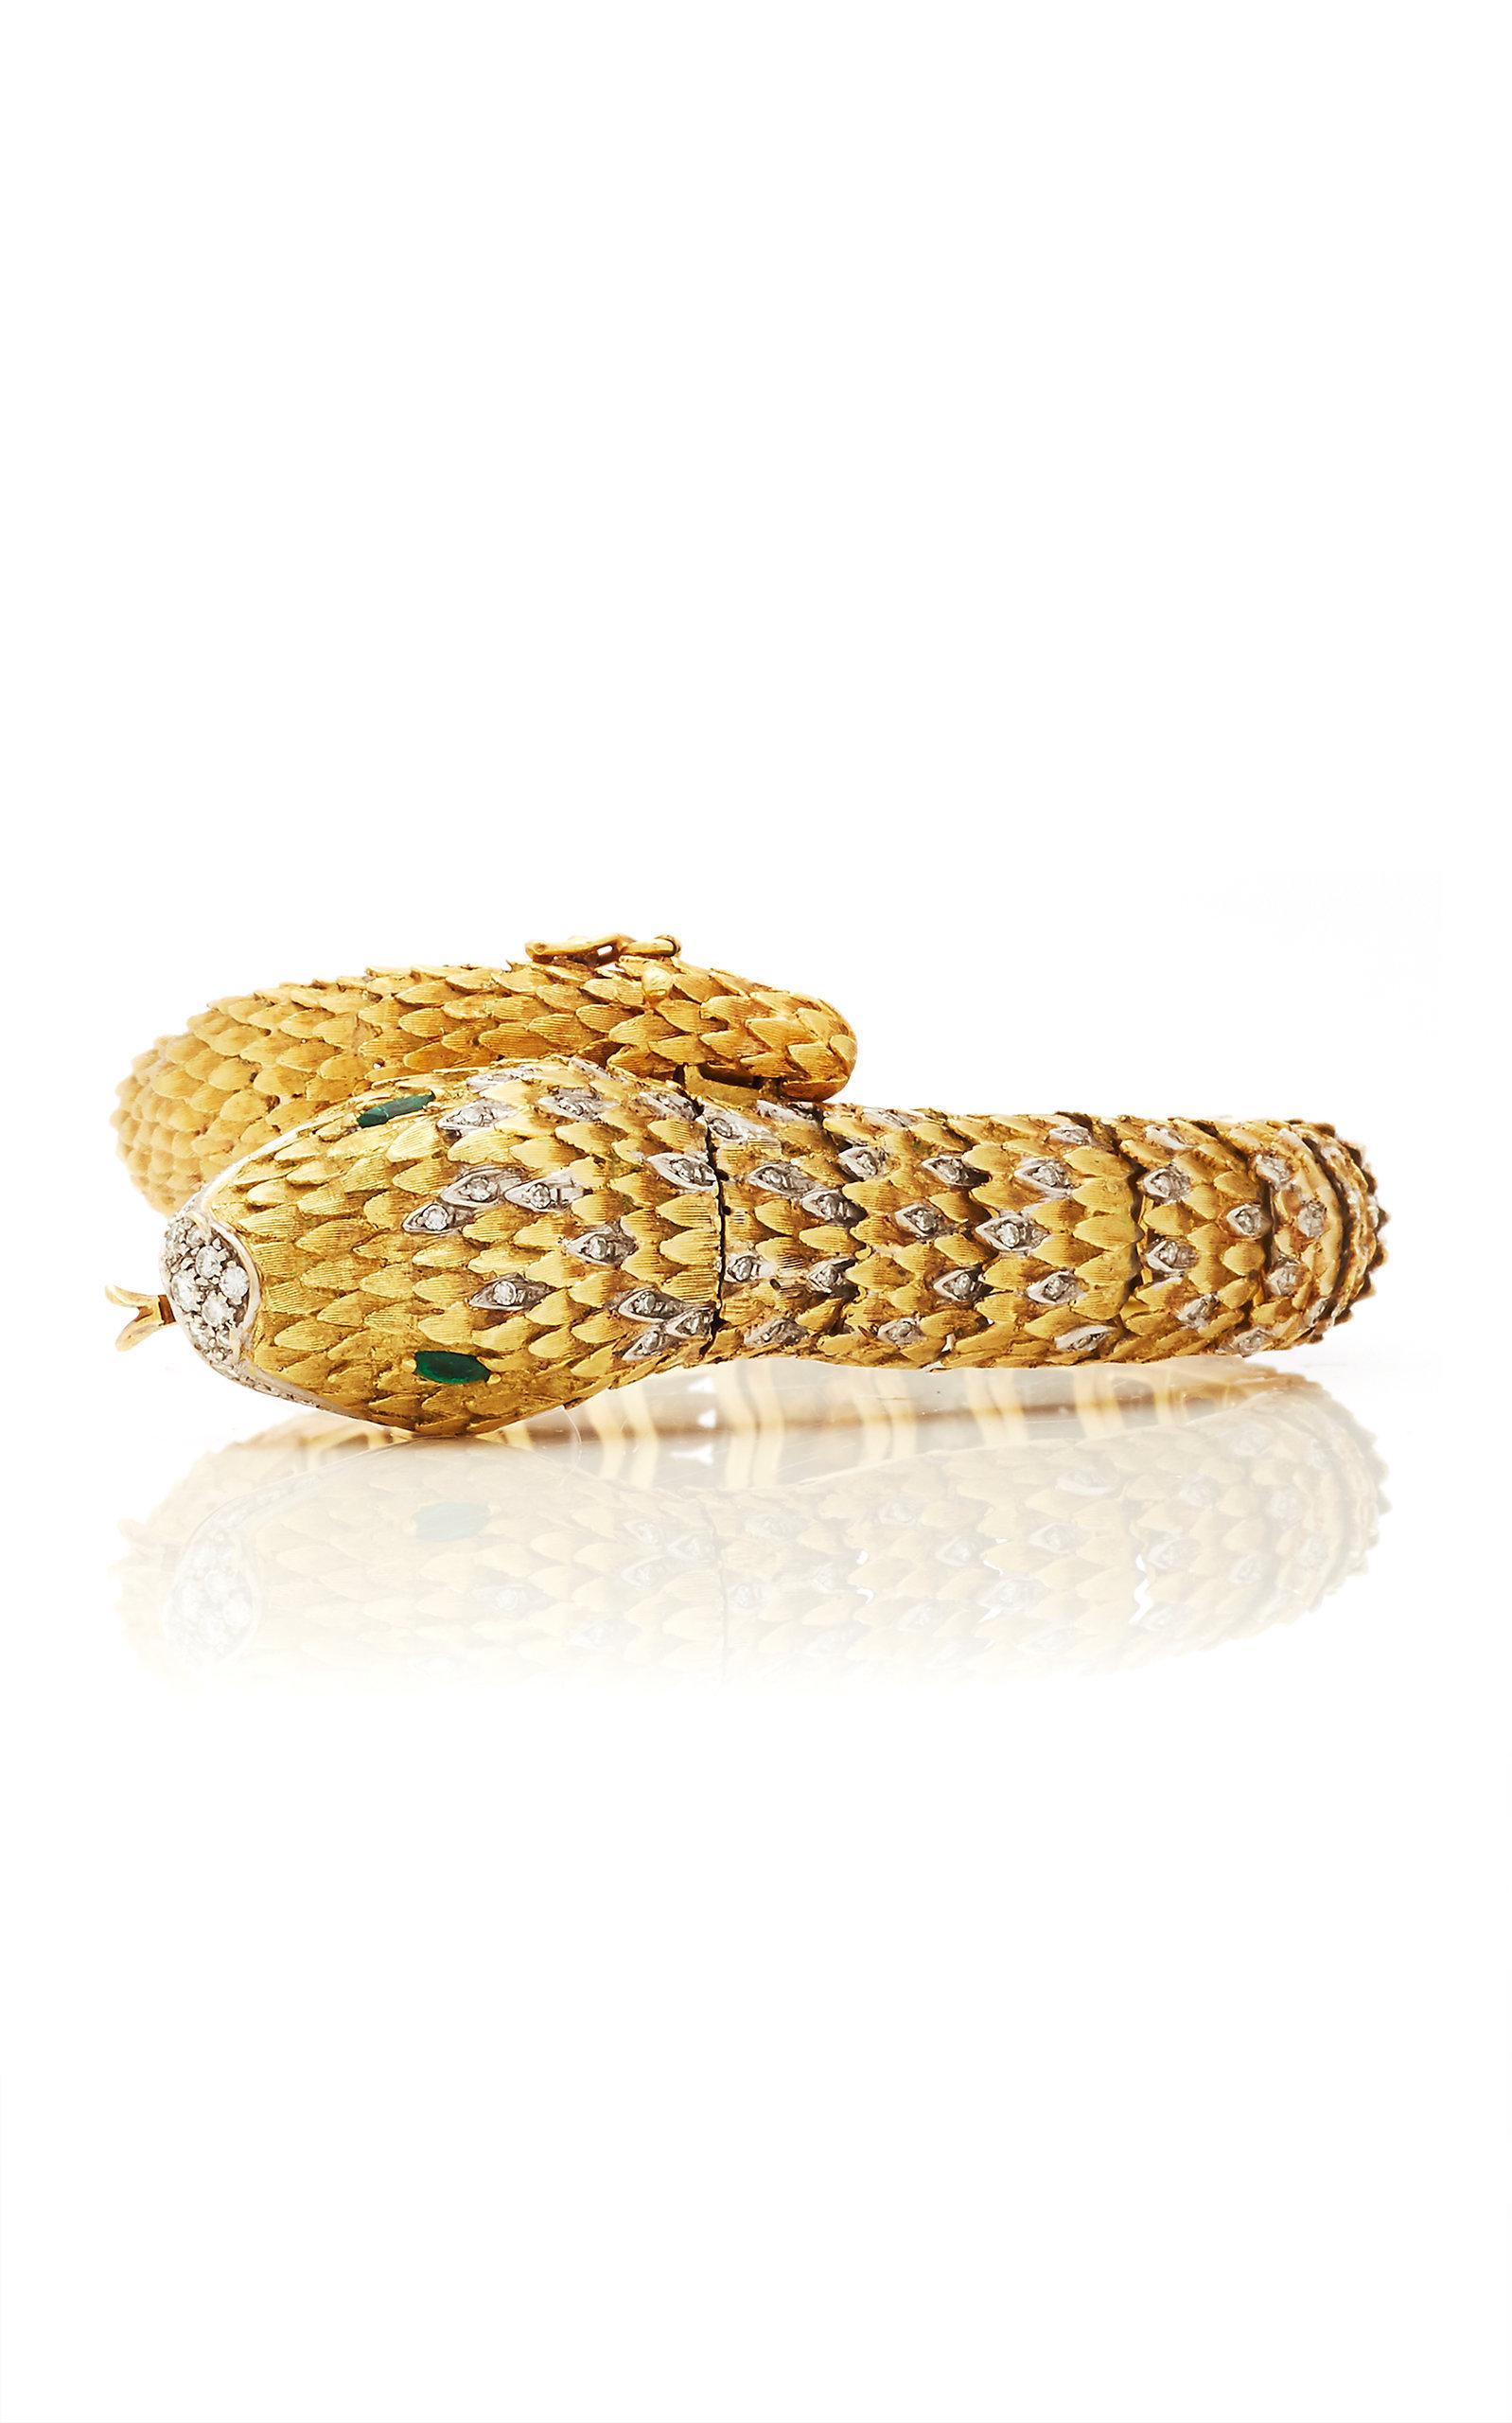 Montre-bracelet serpent en or bicolore, diamants et émeraudes, unique en son genre, de Movado, vers 1970.
